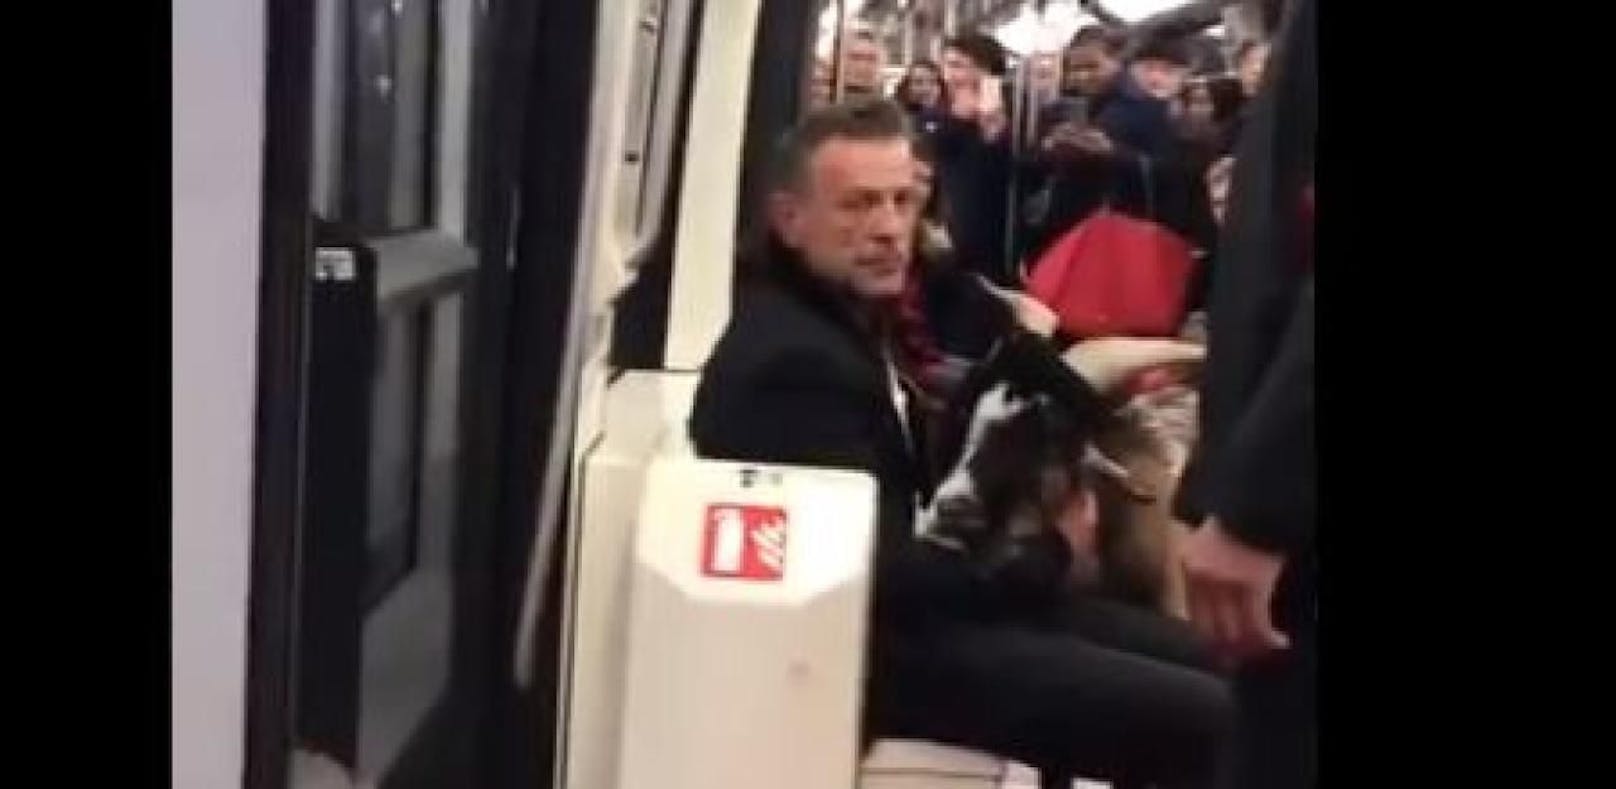 Mann klaut Ziege und legt Pariser Metrolinie lahm